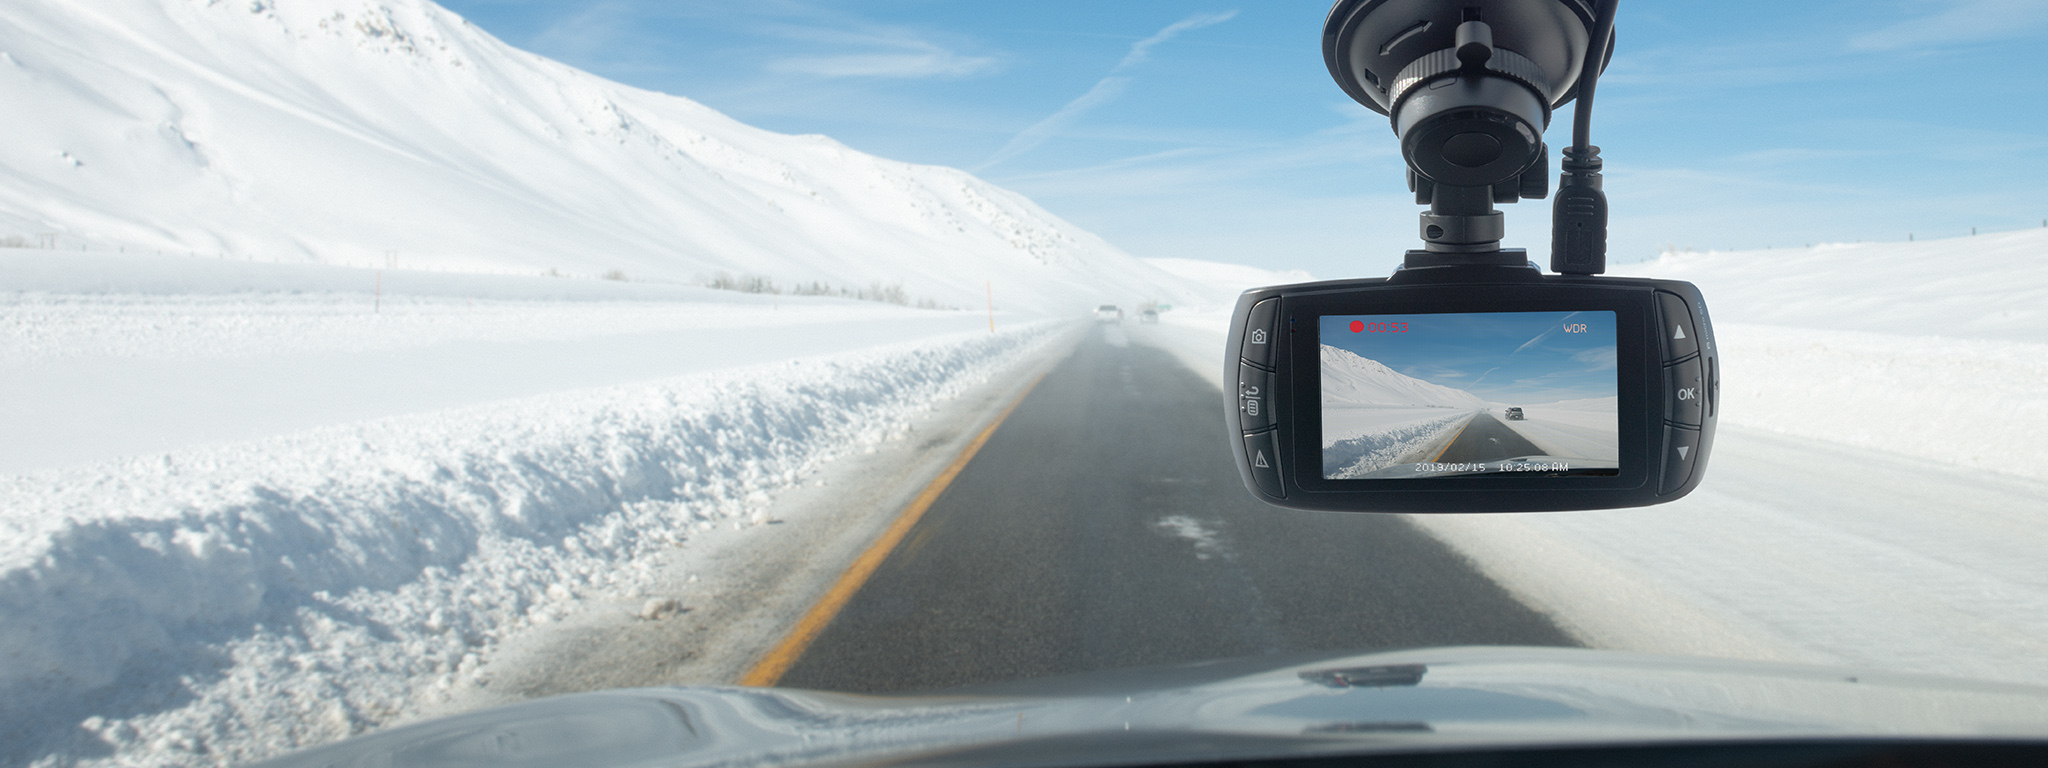 見晴らしのよい雪道を運転中の車のフロントグラスの後ろに取り付けられたドライブレコーダー